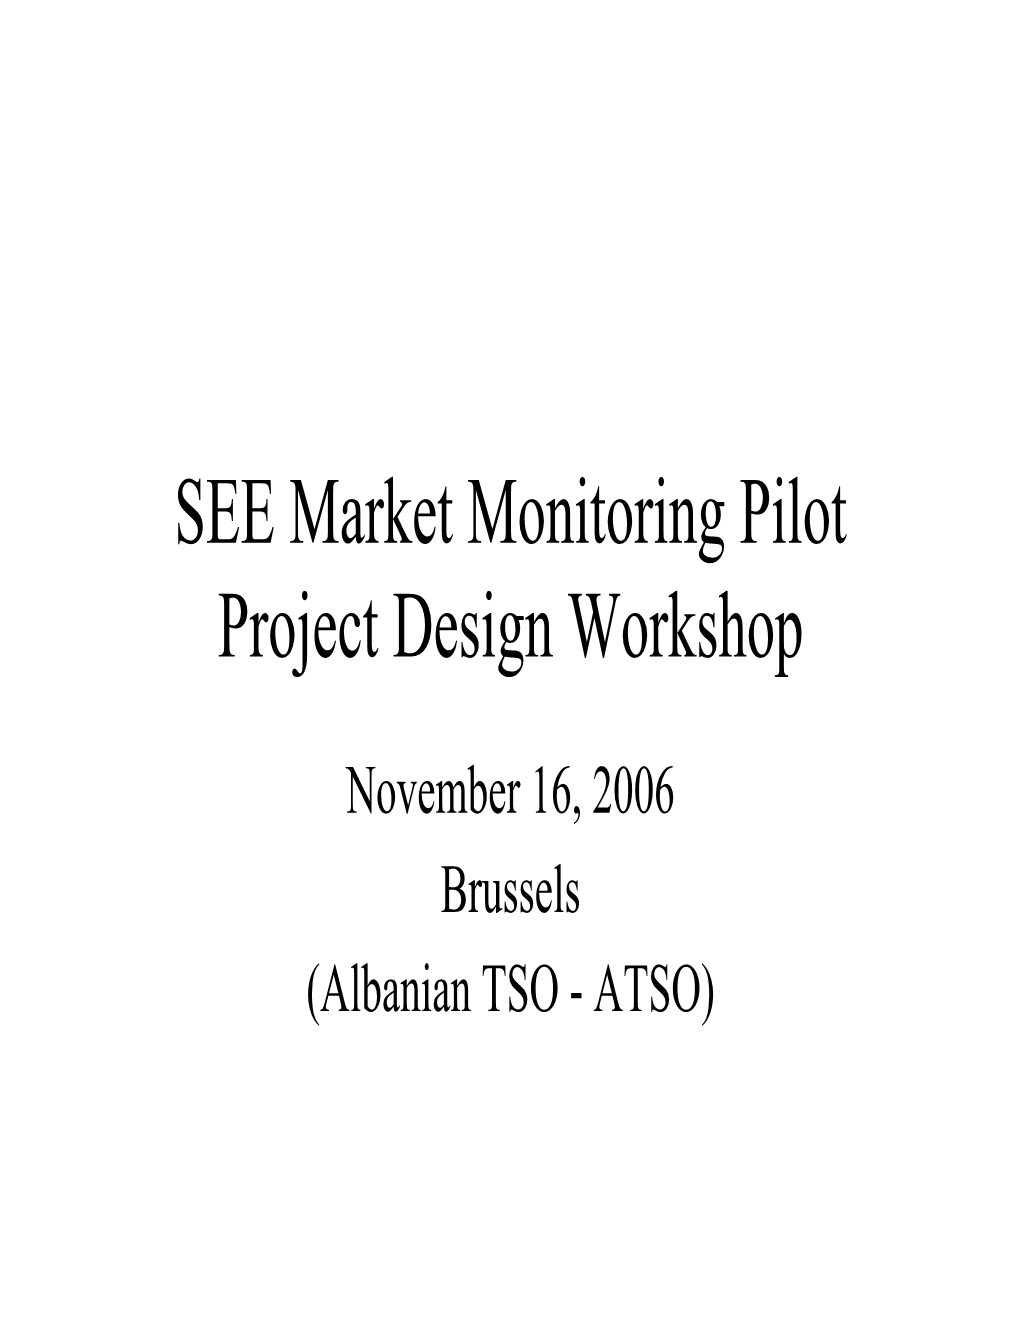 SEE Market Monitoring Pilot Project Design Workshop